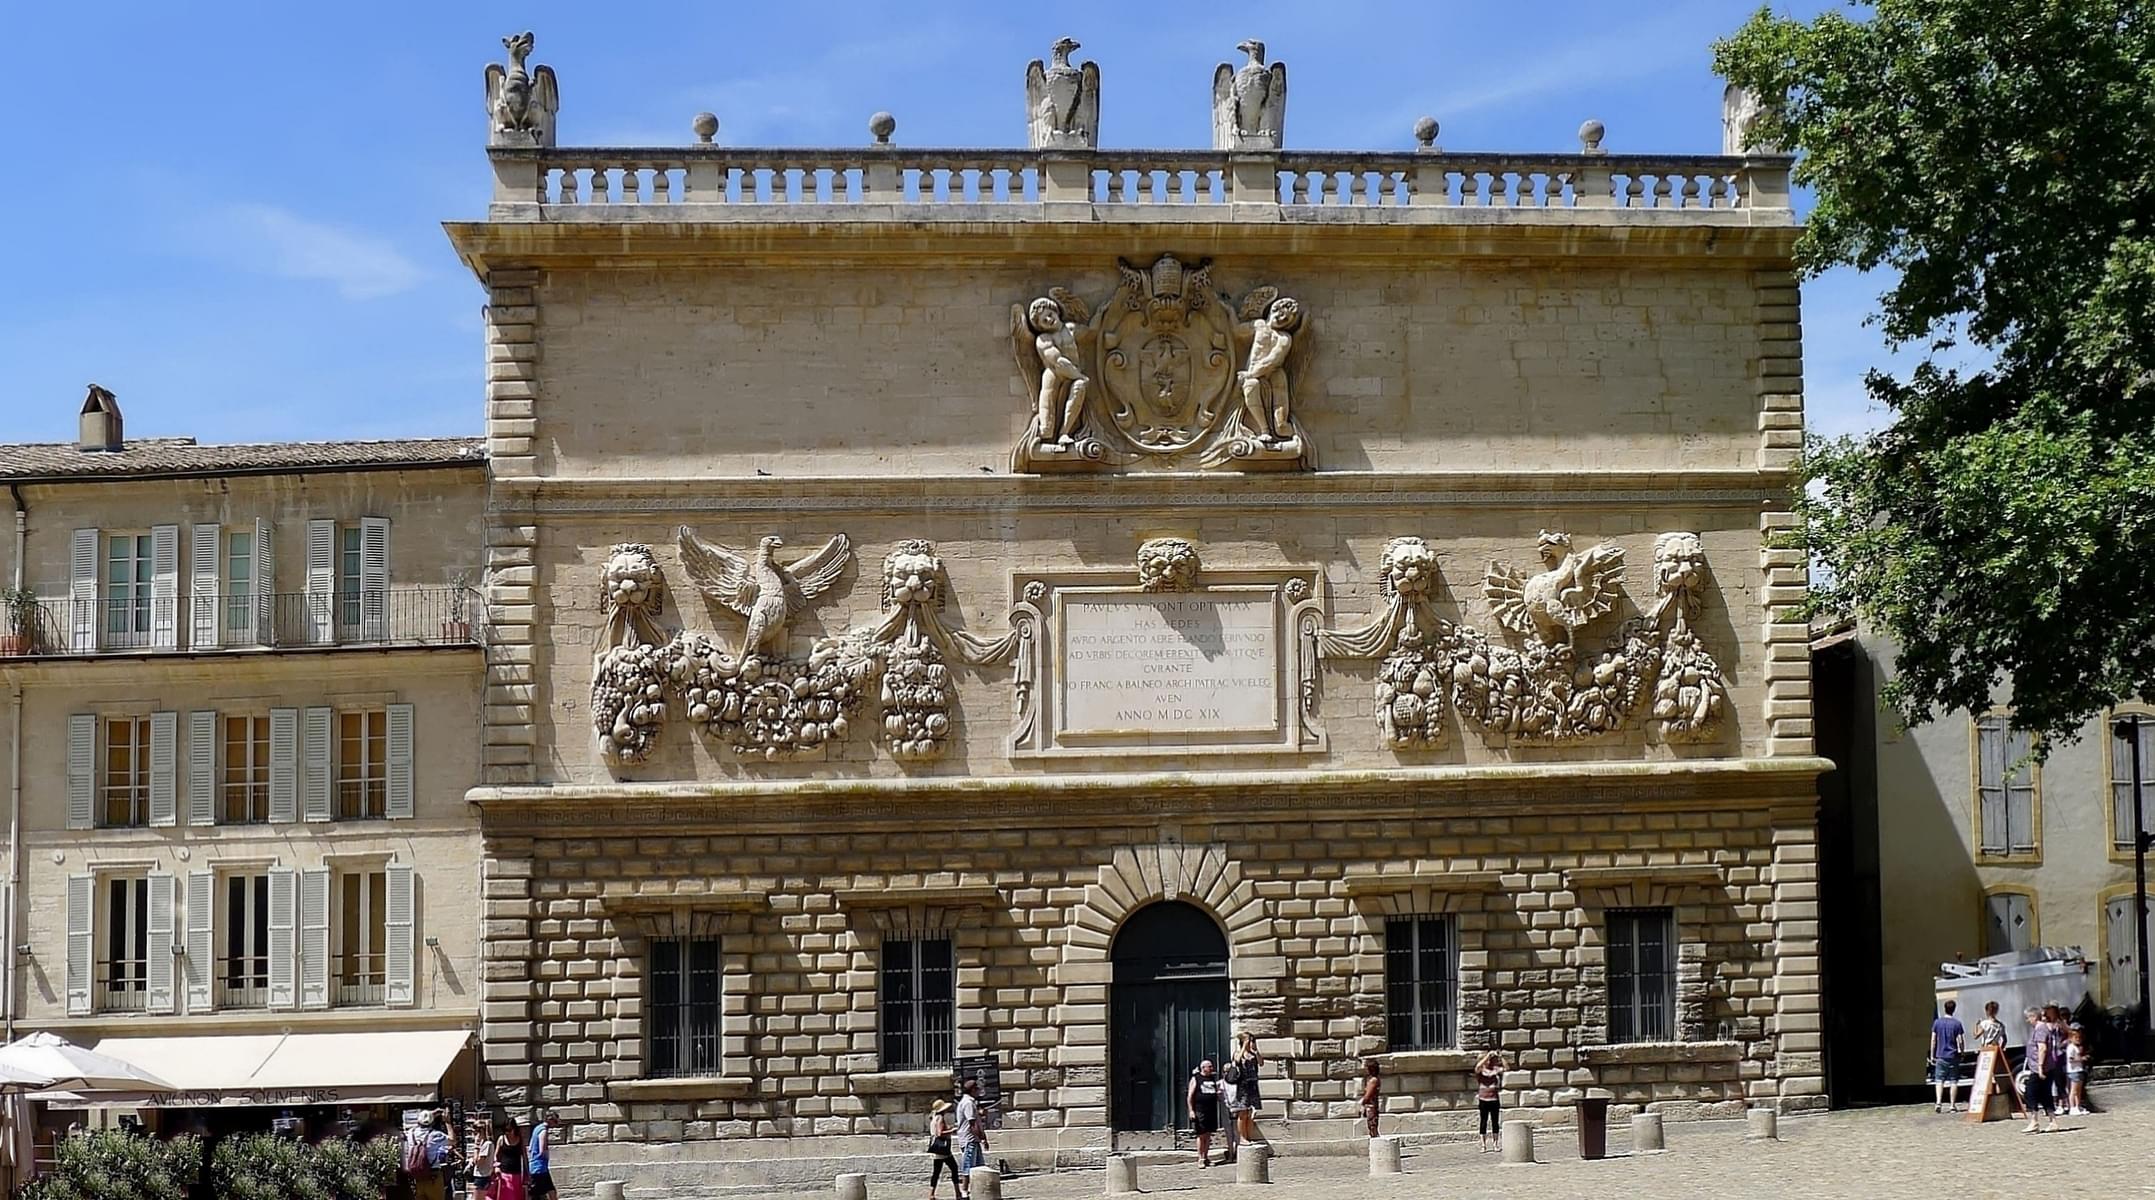 Checkout Borghese Palace & Villa Borghese